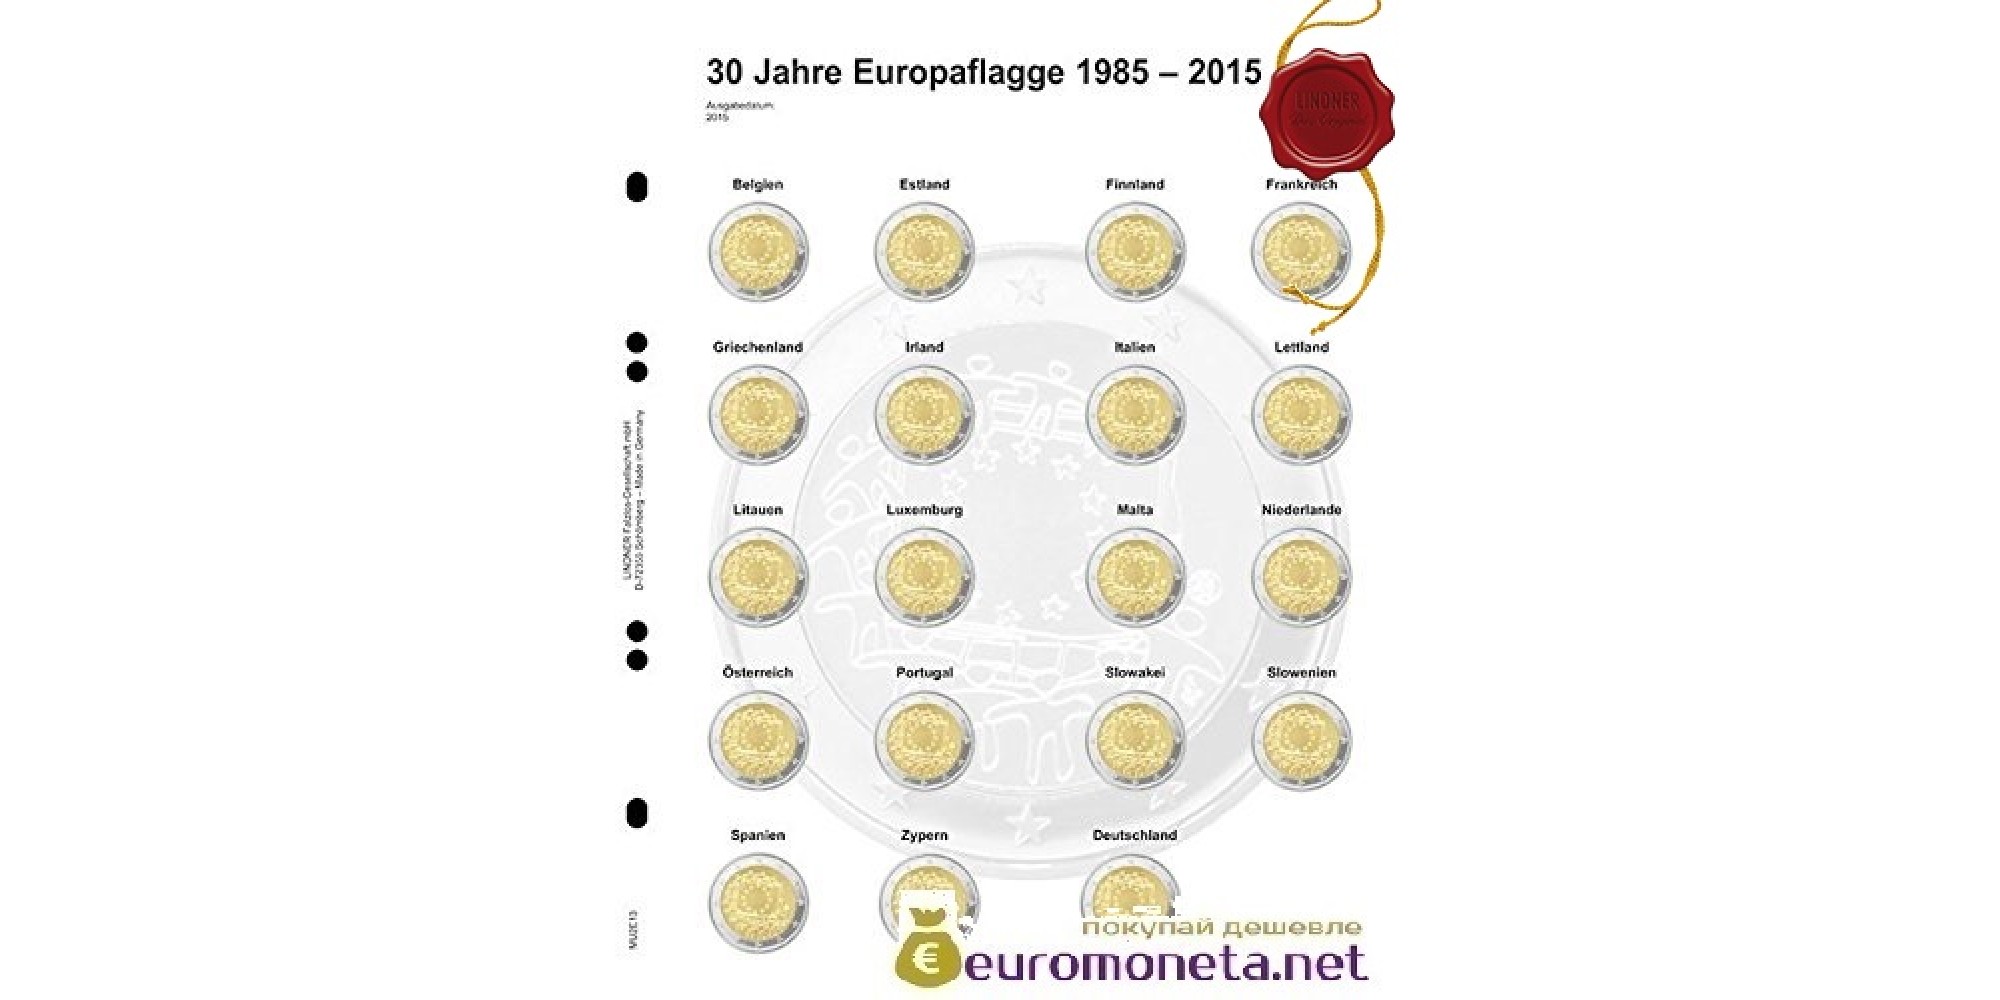 Lindner Multi Collect (Optima) дополнительный лист для 2 евро памятных монет: общий выпуск "30 лет европейского флага", Германия